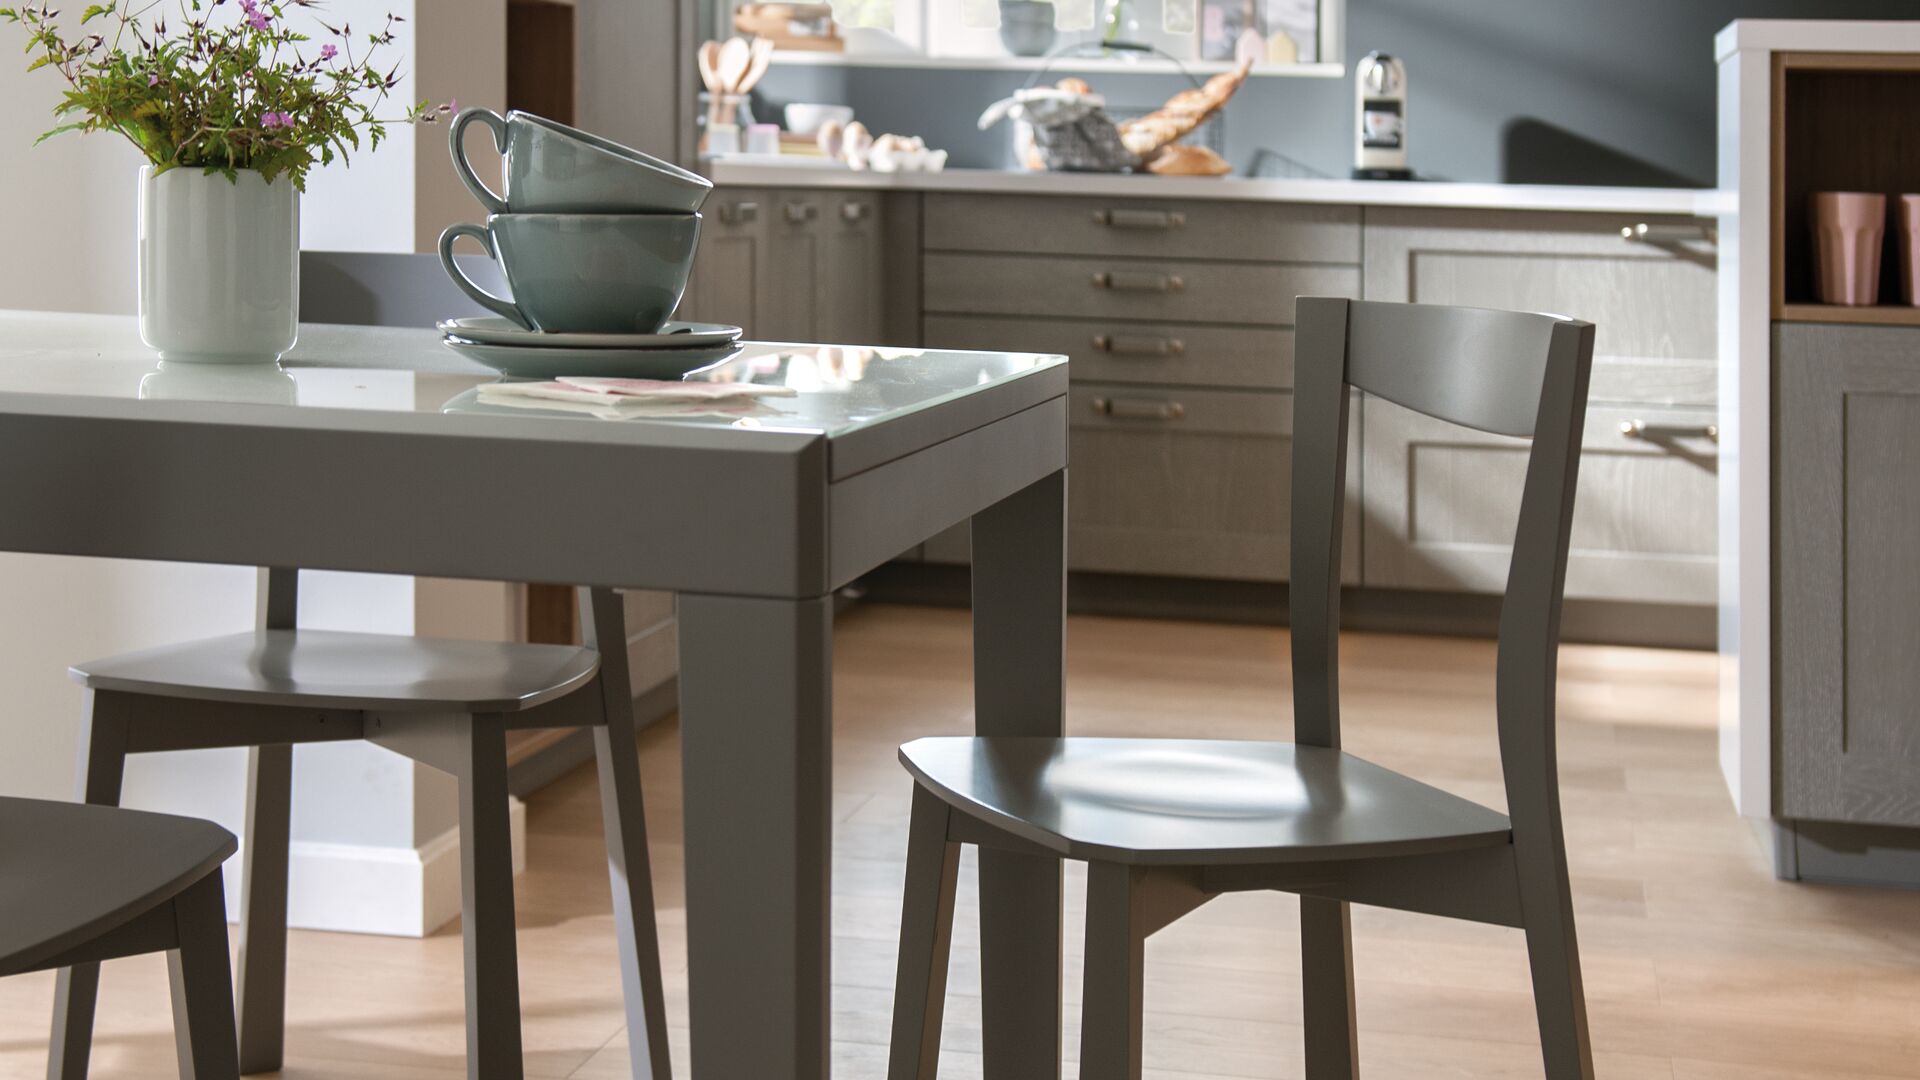 Tische und Stühle in zur Küche passendem Grauton